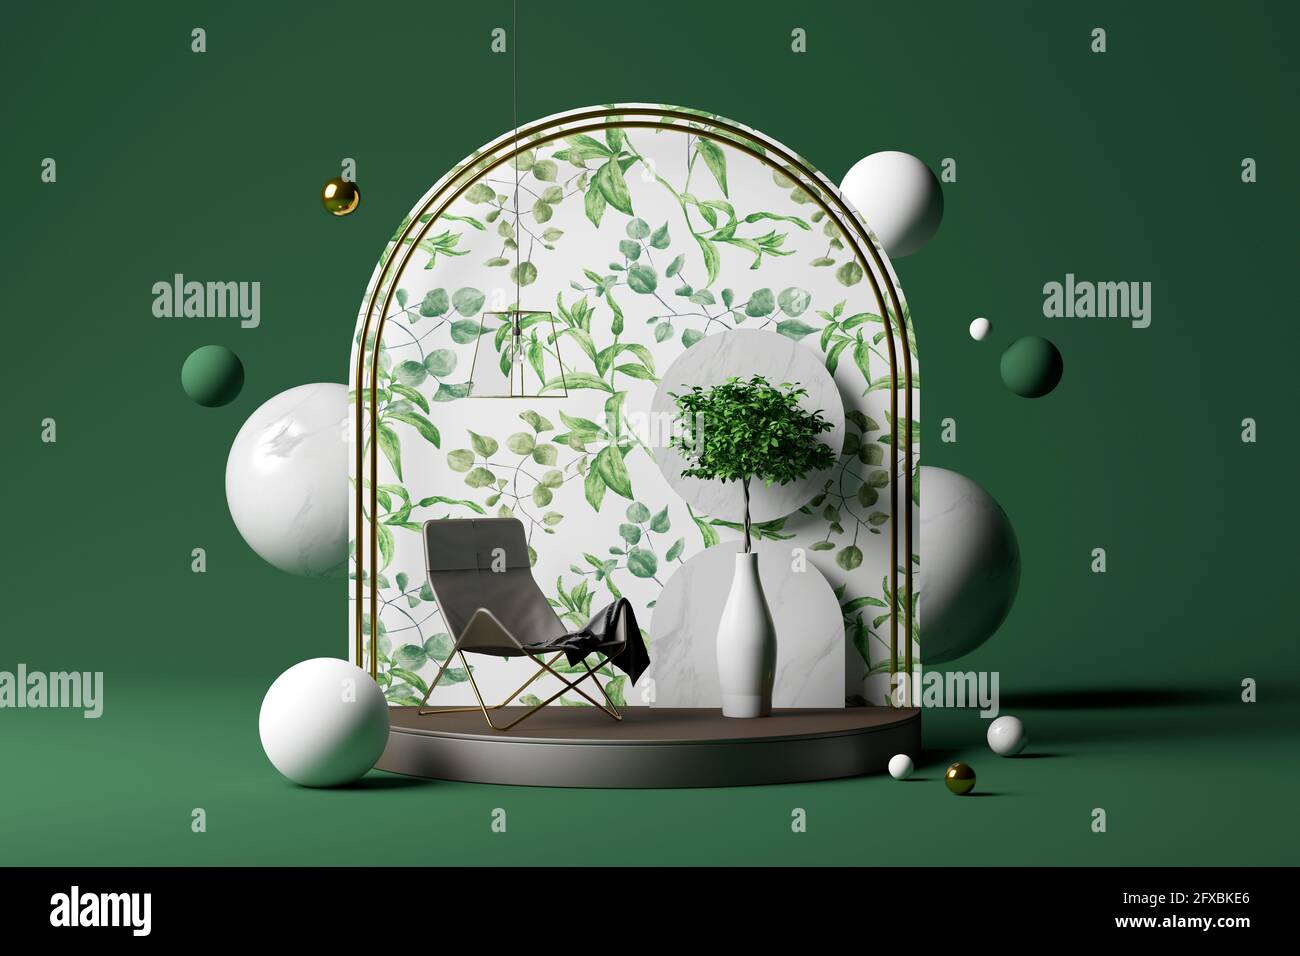 Rendu tridimensionnel de plantes en pot, chaise vide et arche décorative sur socle avec différentes sphères flottant sur fond vert Banque D'Images